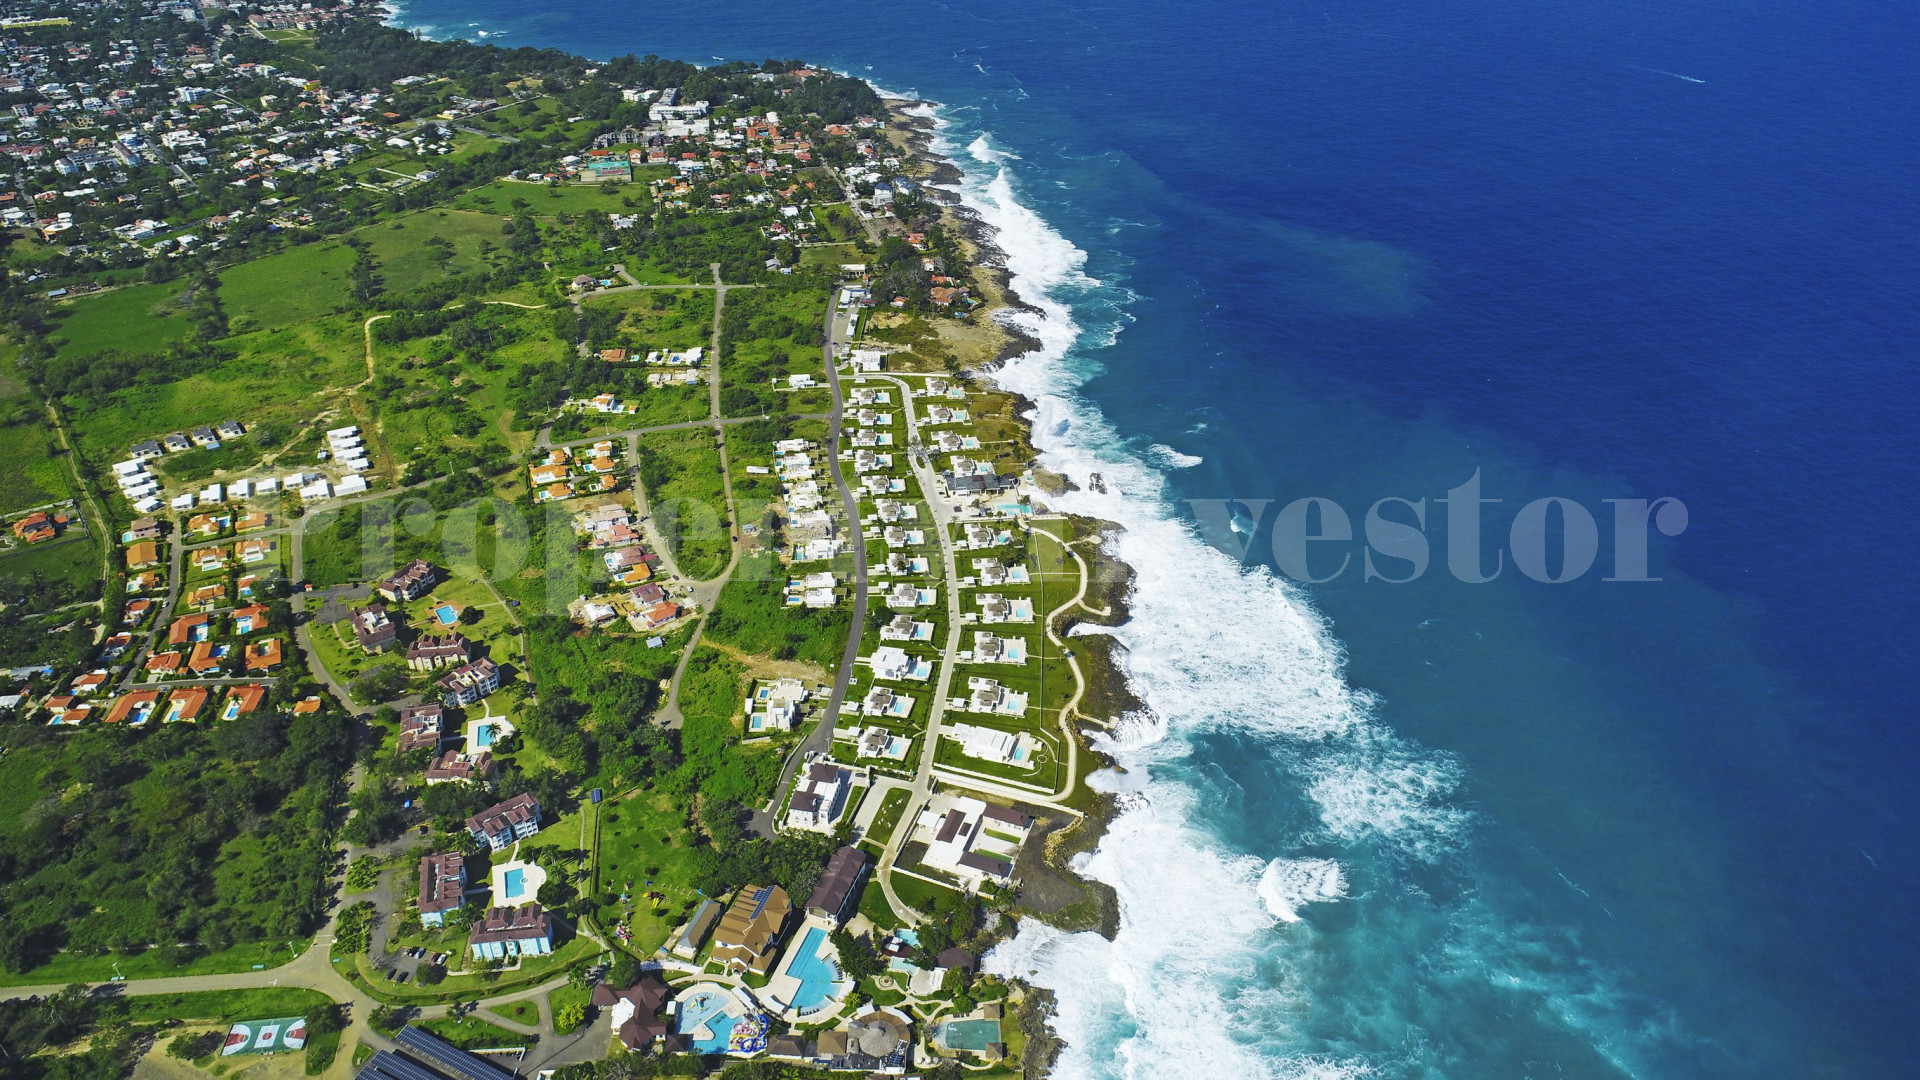 Участок в собственность в Доминиканской Республике с финансированием до 10 лет (Lot 32)